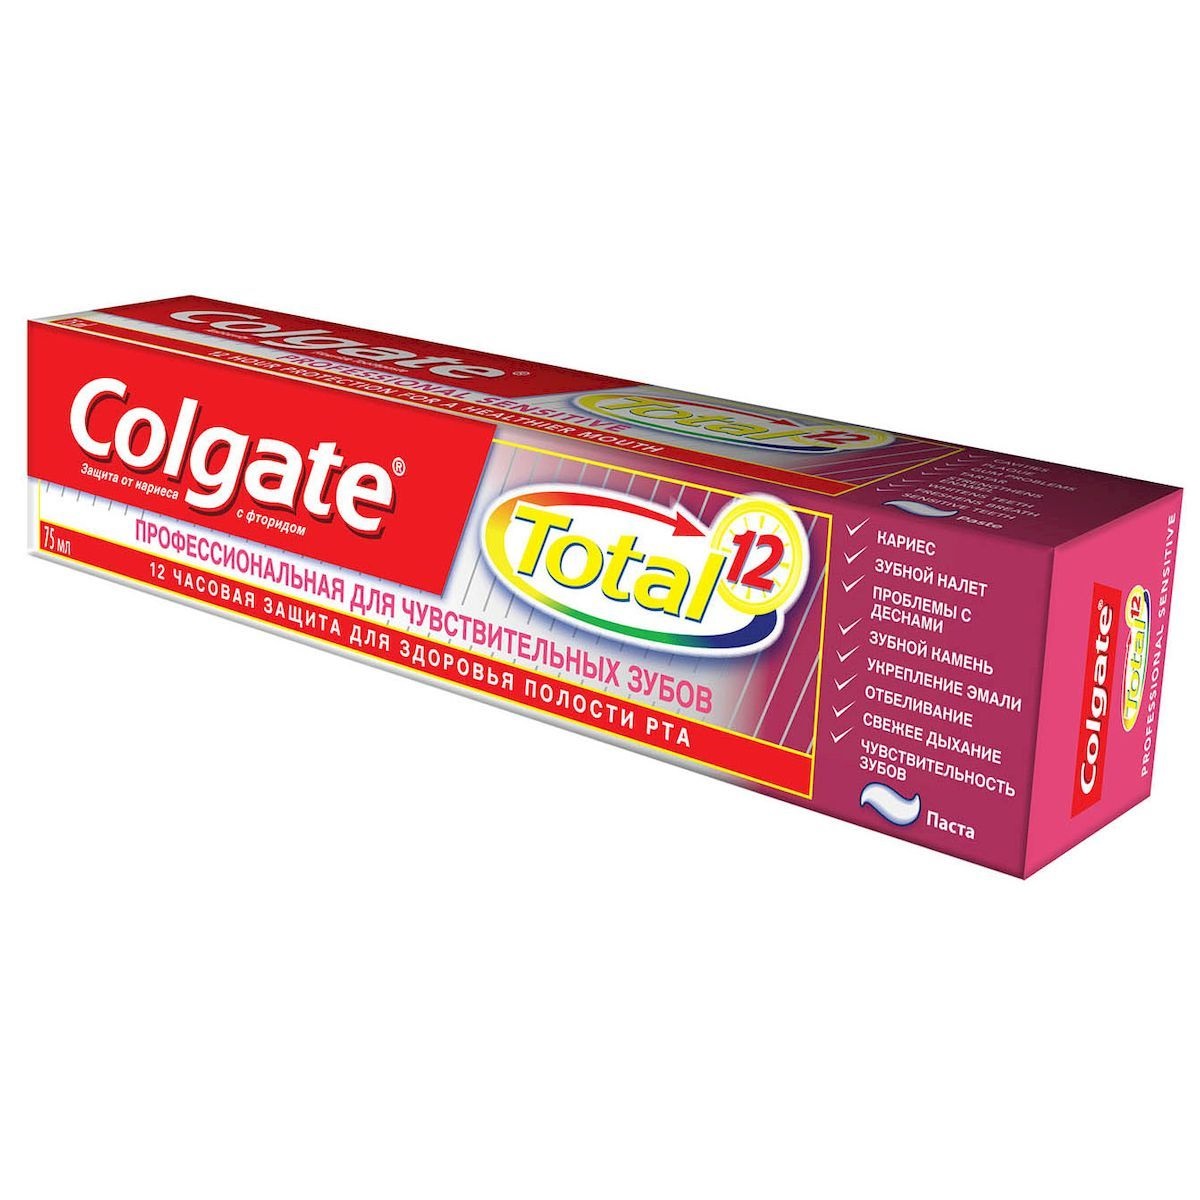 COLGATE Total 12 Профессиональная Зубная паста для Чувствительных зубов 75мл